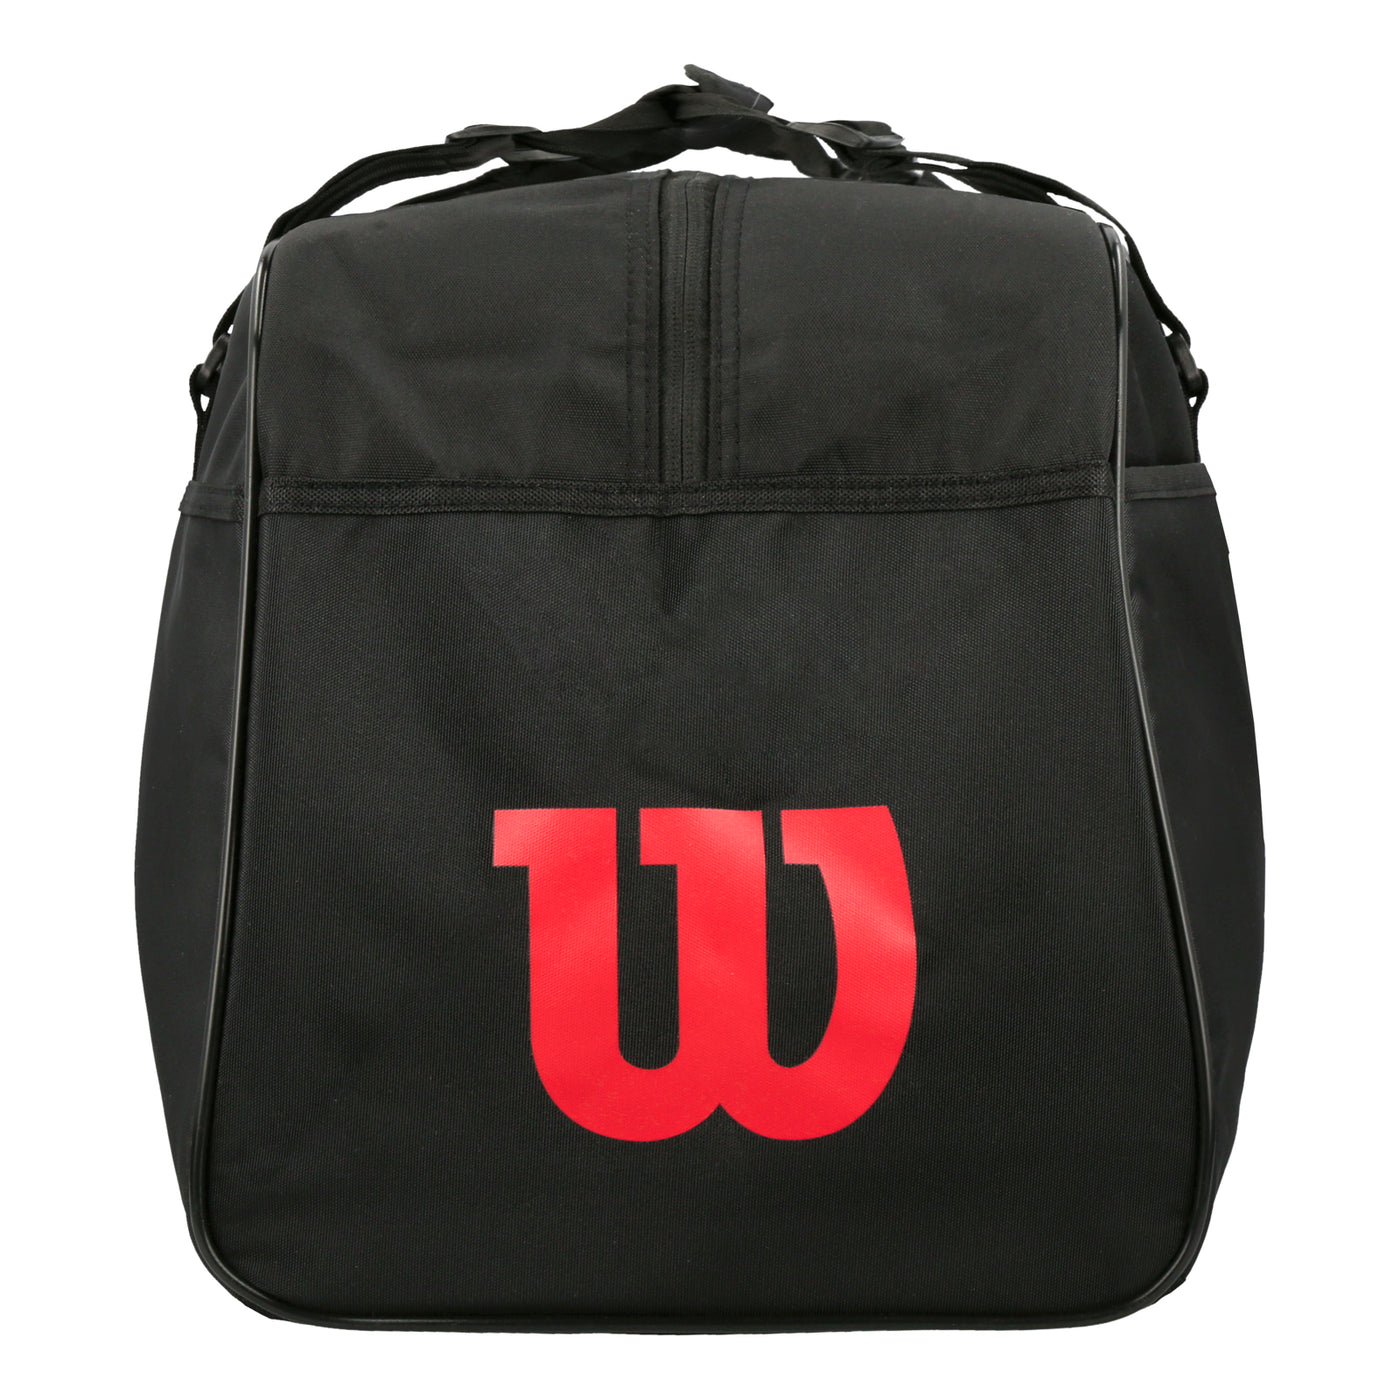 Wilson X Billebeino Duffel Bag